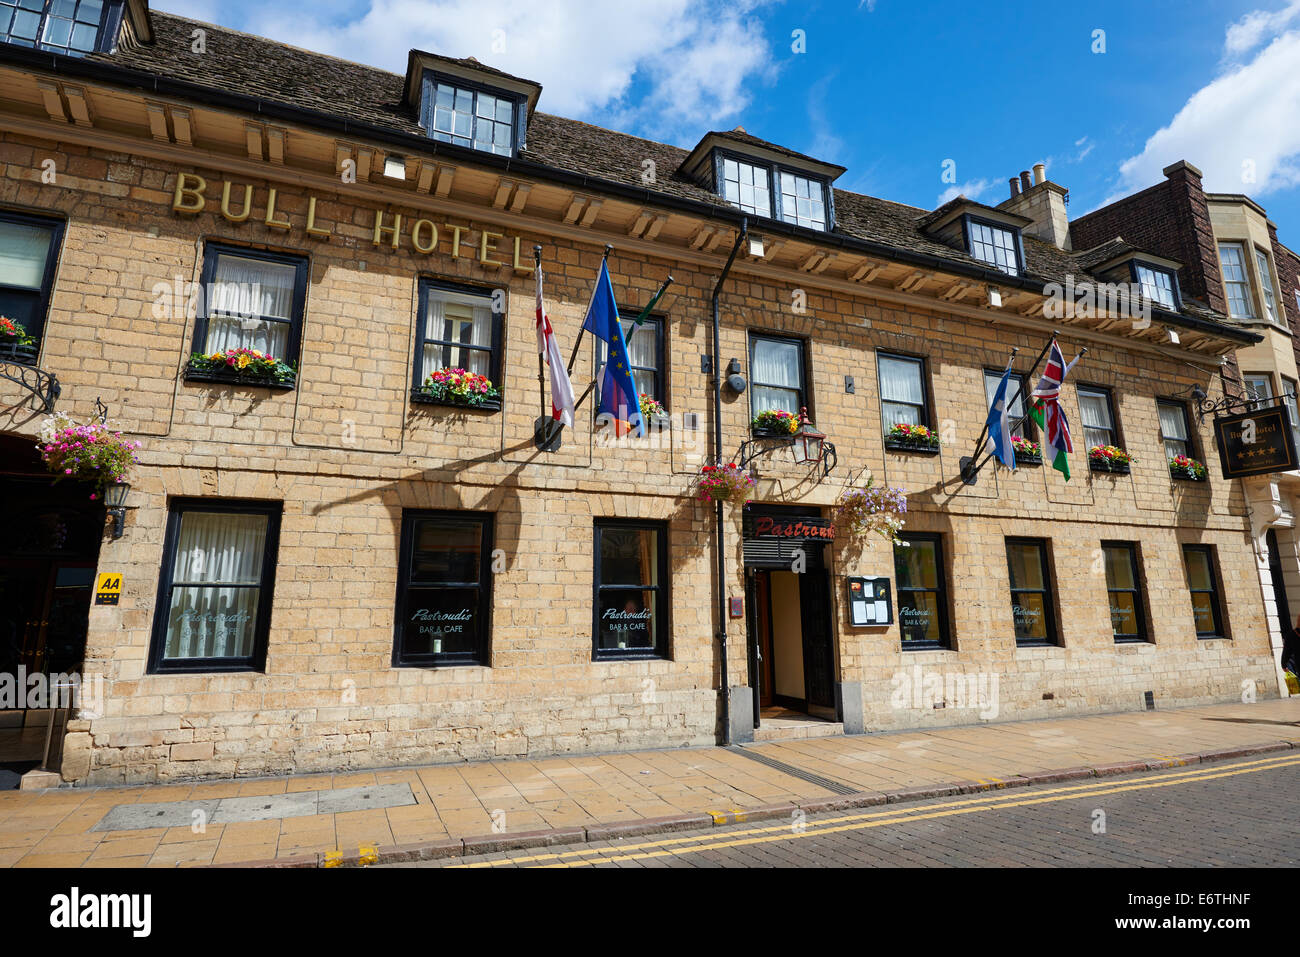 Bull Hotel Westgate Peterborough Cambridgeshire Regno Unito Foto Stock